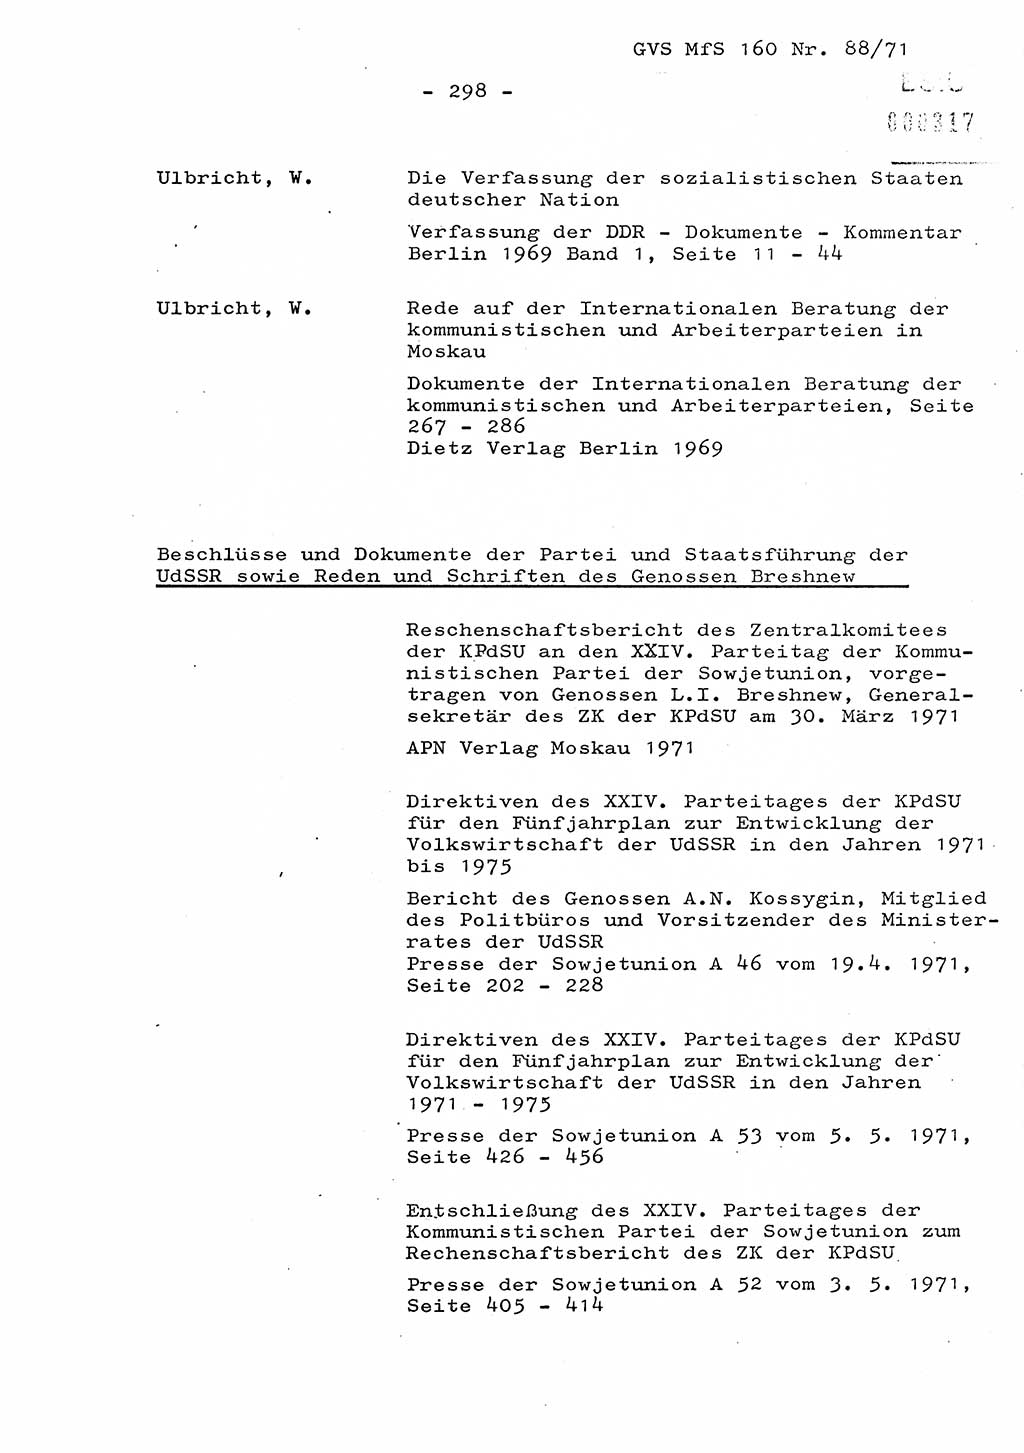 Dissertation Oberstleutnant Josef Schwarz (BV Schwerin), Major Fritz Amm (JHS), Hauptmann Peter Gräßler (JHS), Ministerium für Staatssicherheit (MfS) [Deutsche Demokratische Republik (DDR)], Juristische Hochschule (JHS), Geheime Verschlußsache (GVS) 160-88/71, Potsdam 1972, Seite 298 (Diss. MfS DDR JHS GVS 160-88/71 1972, S. 298)